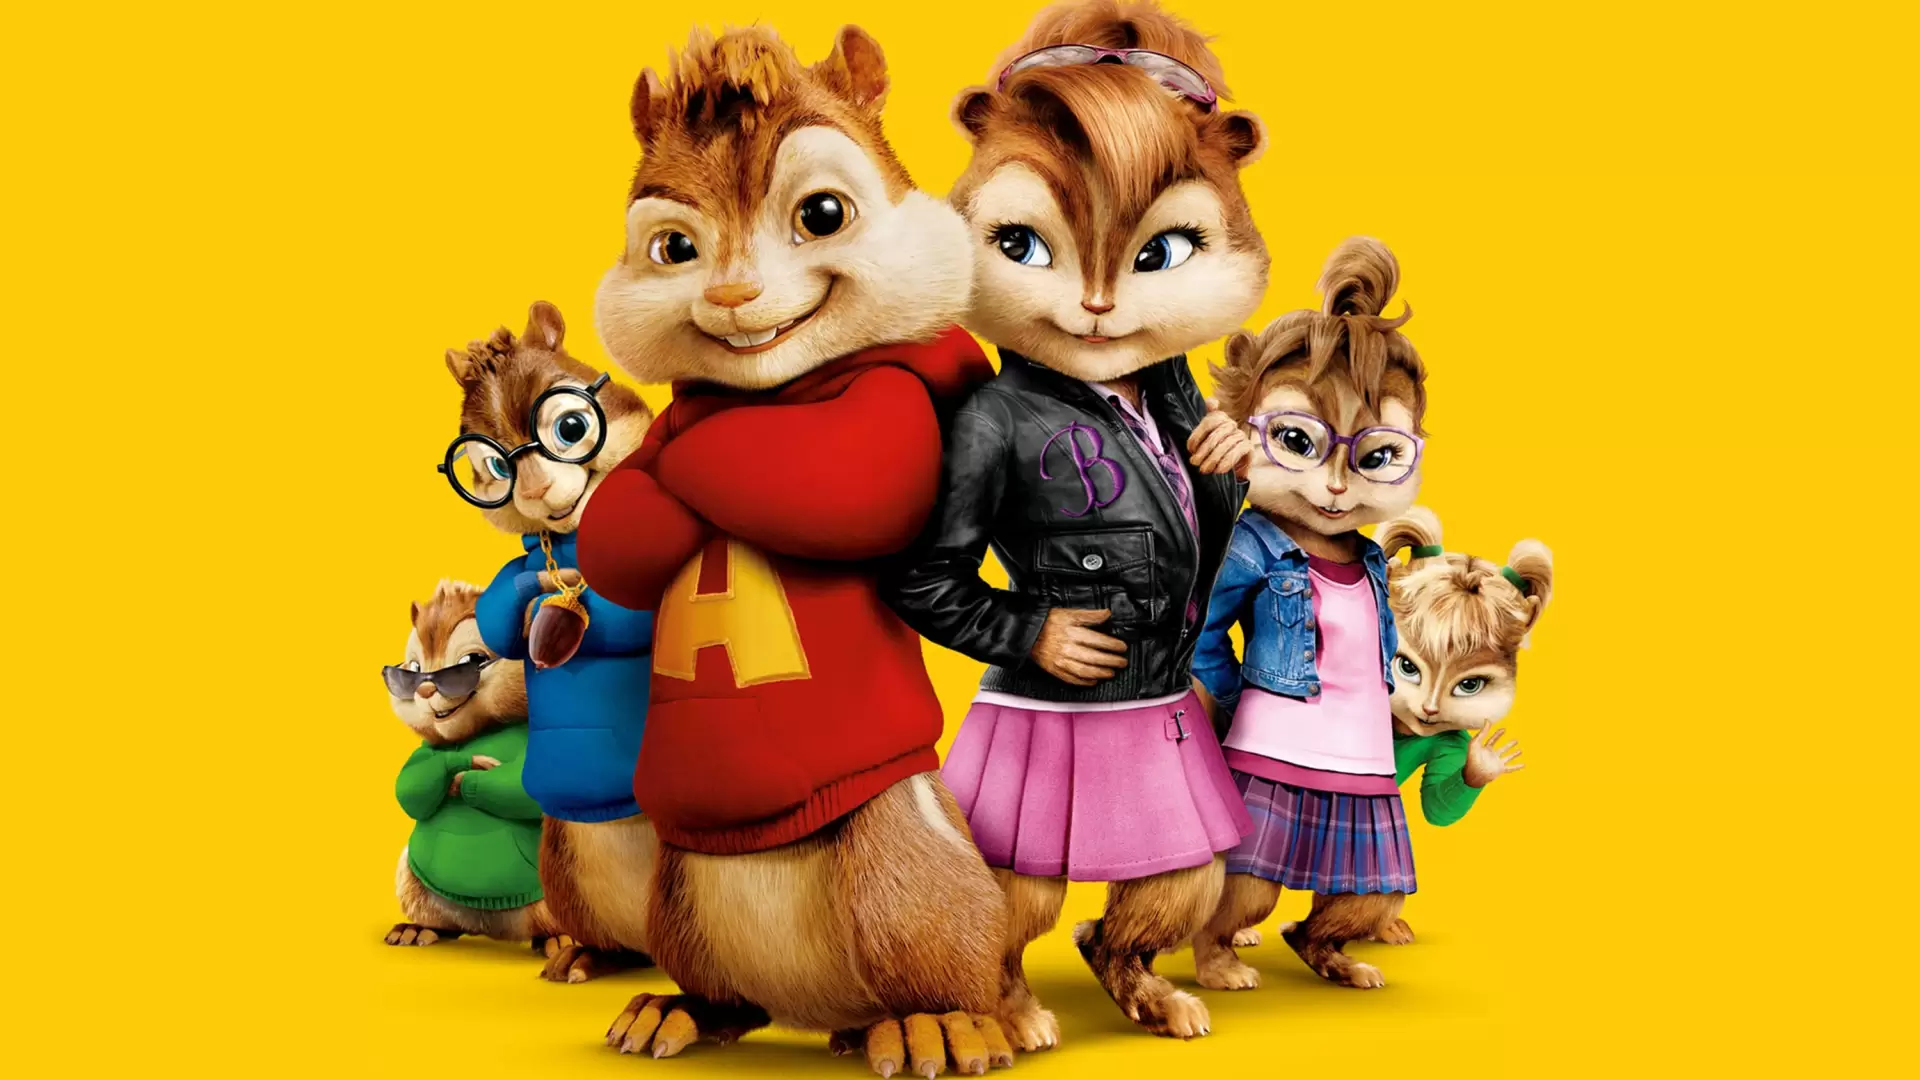 دانلود انیمیشن Alvin and the Chipmunks: The Squeakquel 2009 با زیرنویس فارسی